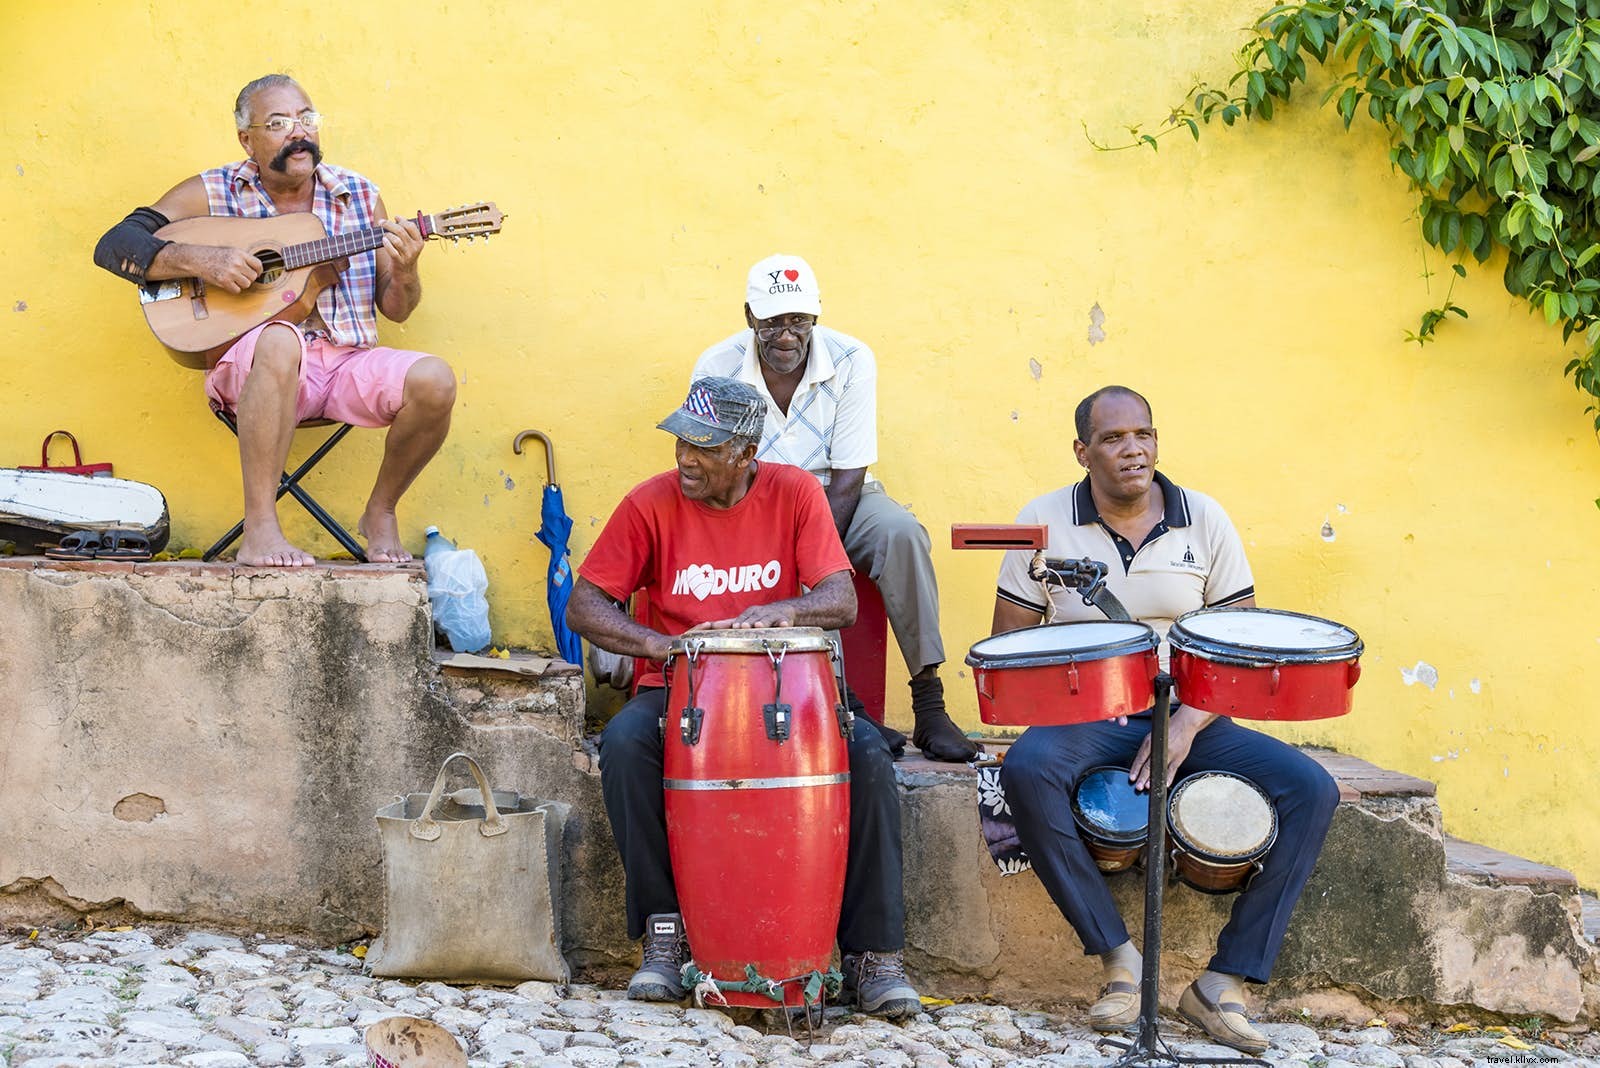 El ritmo cubano：キューバの音楽の魂 